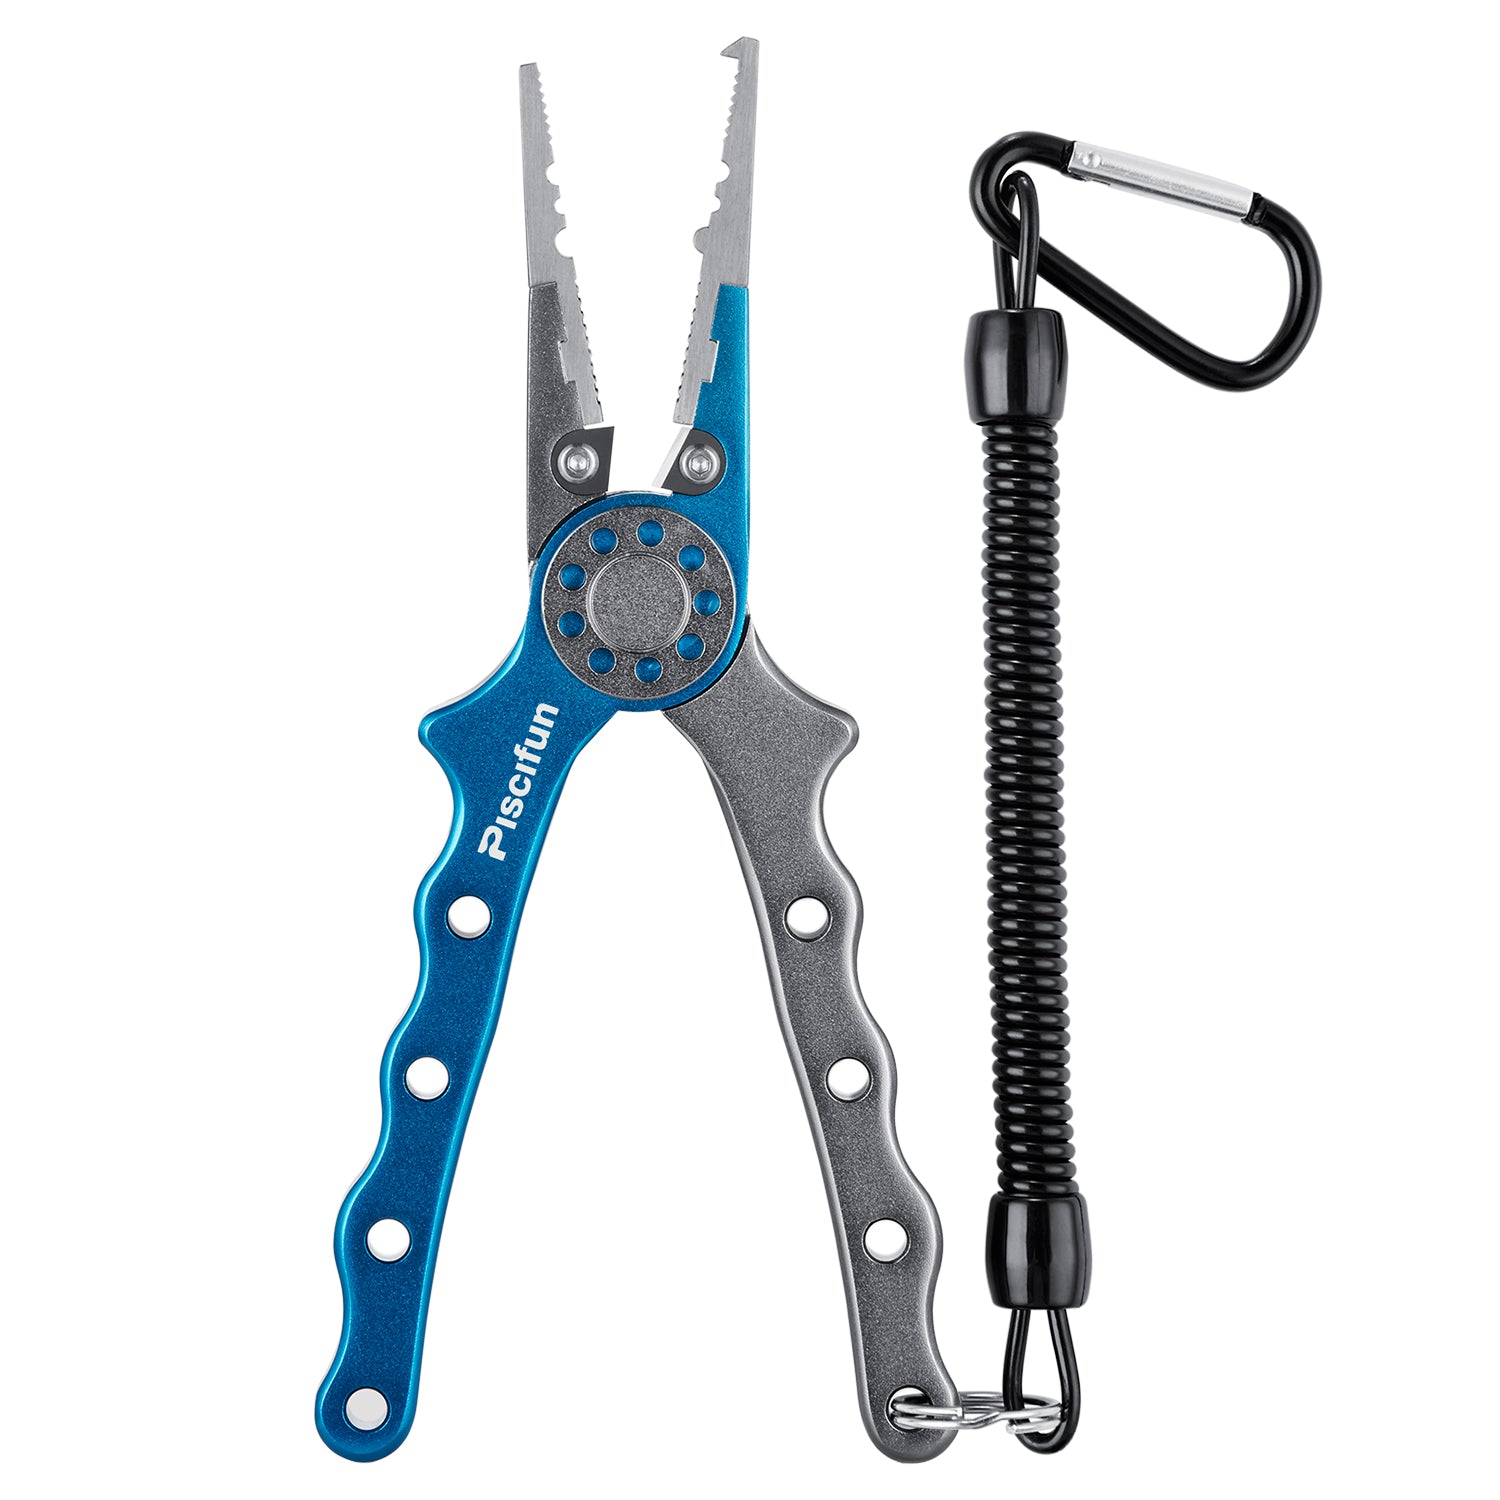 Buy Piscifun Fishing Pliers Aluminium Hook Remover Braid Cutters